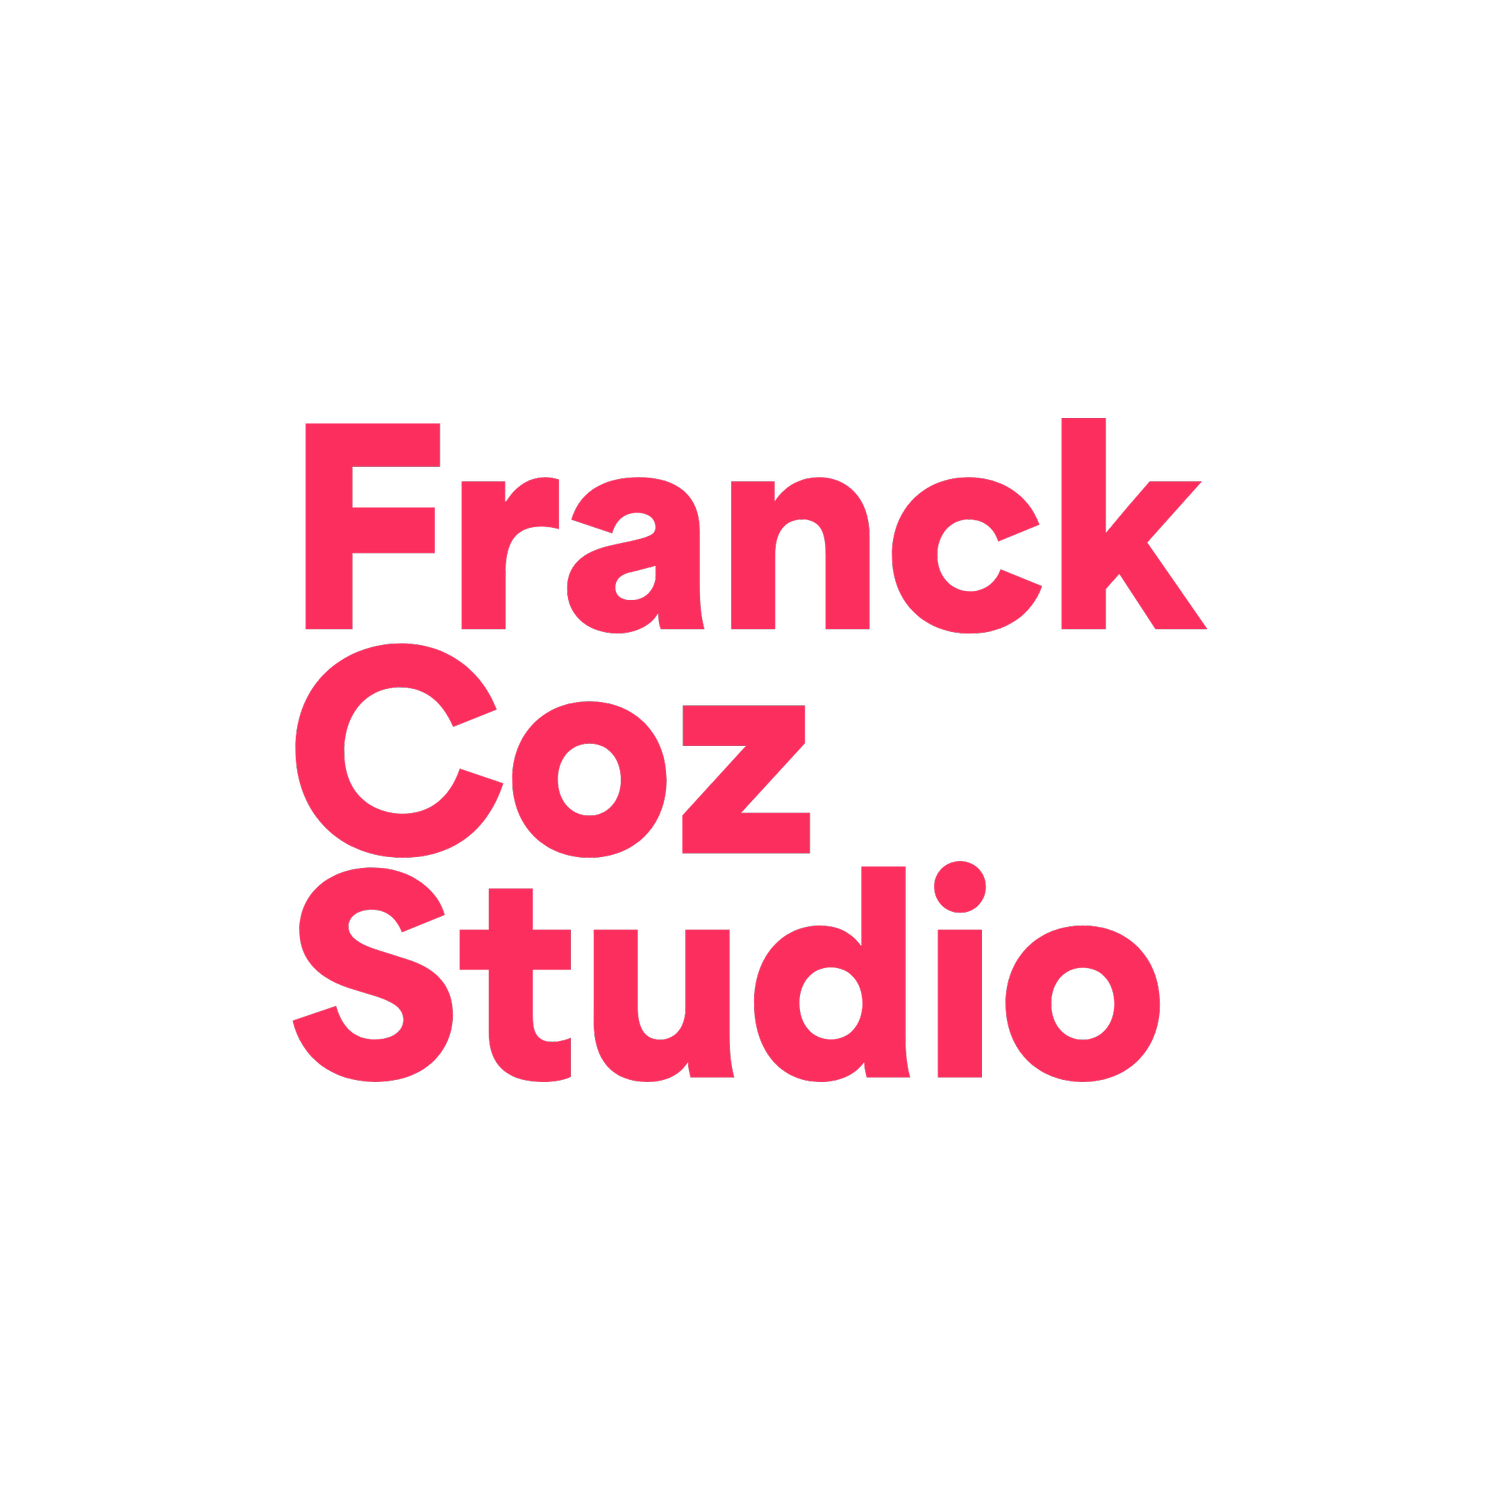 Franck Coz Studio